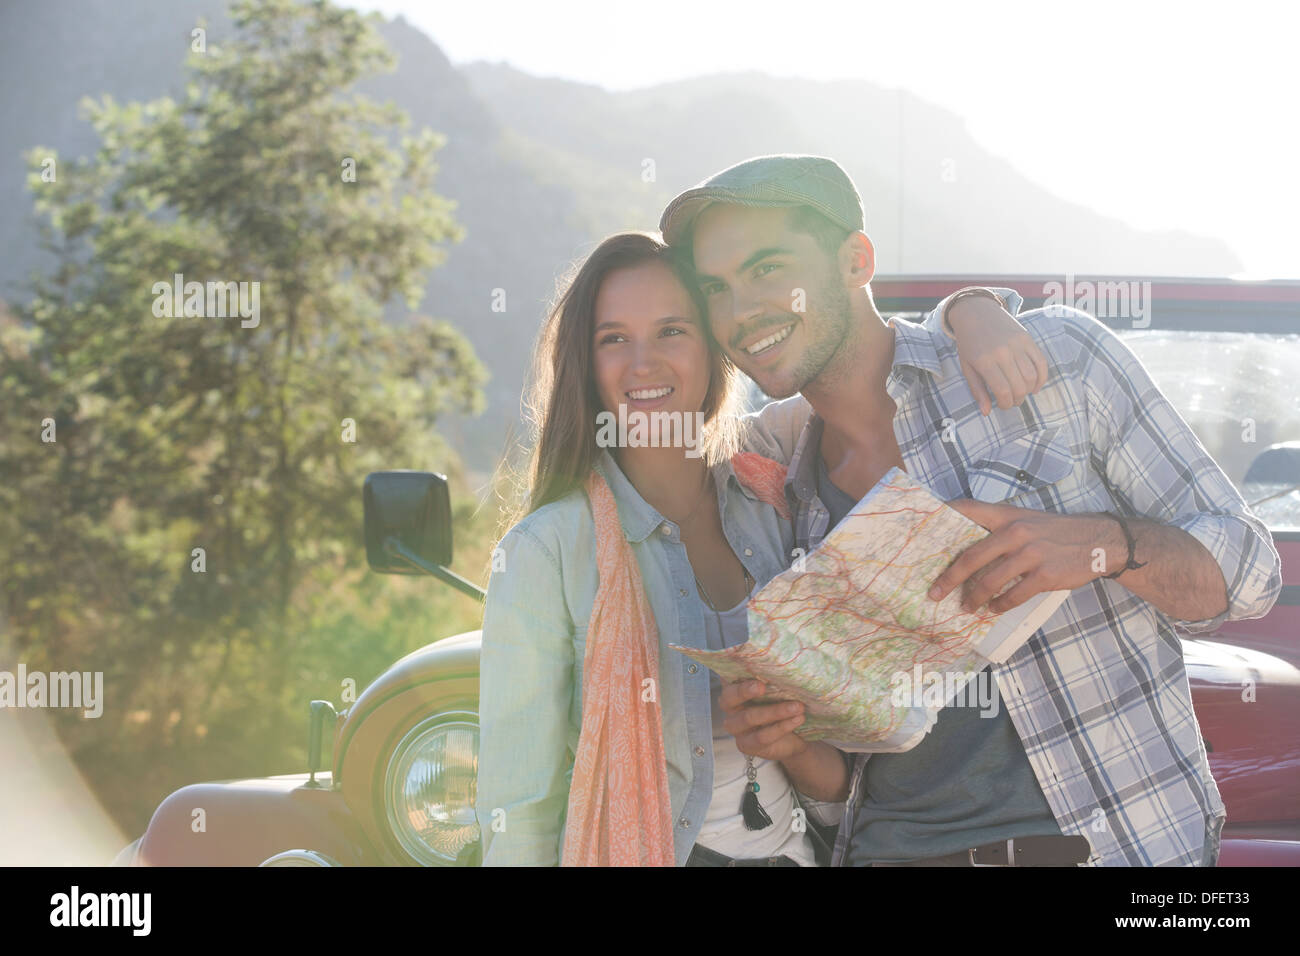 Coppia sorridente con mappa accanto a sport utility vehicle Foto Stock